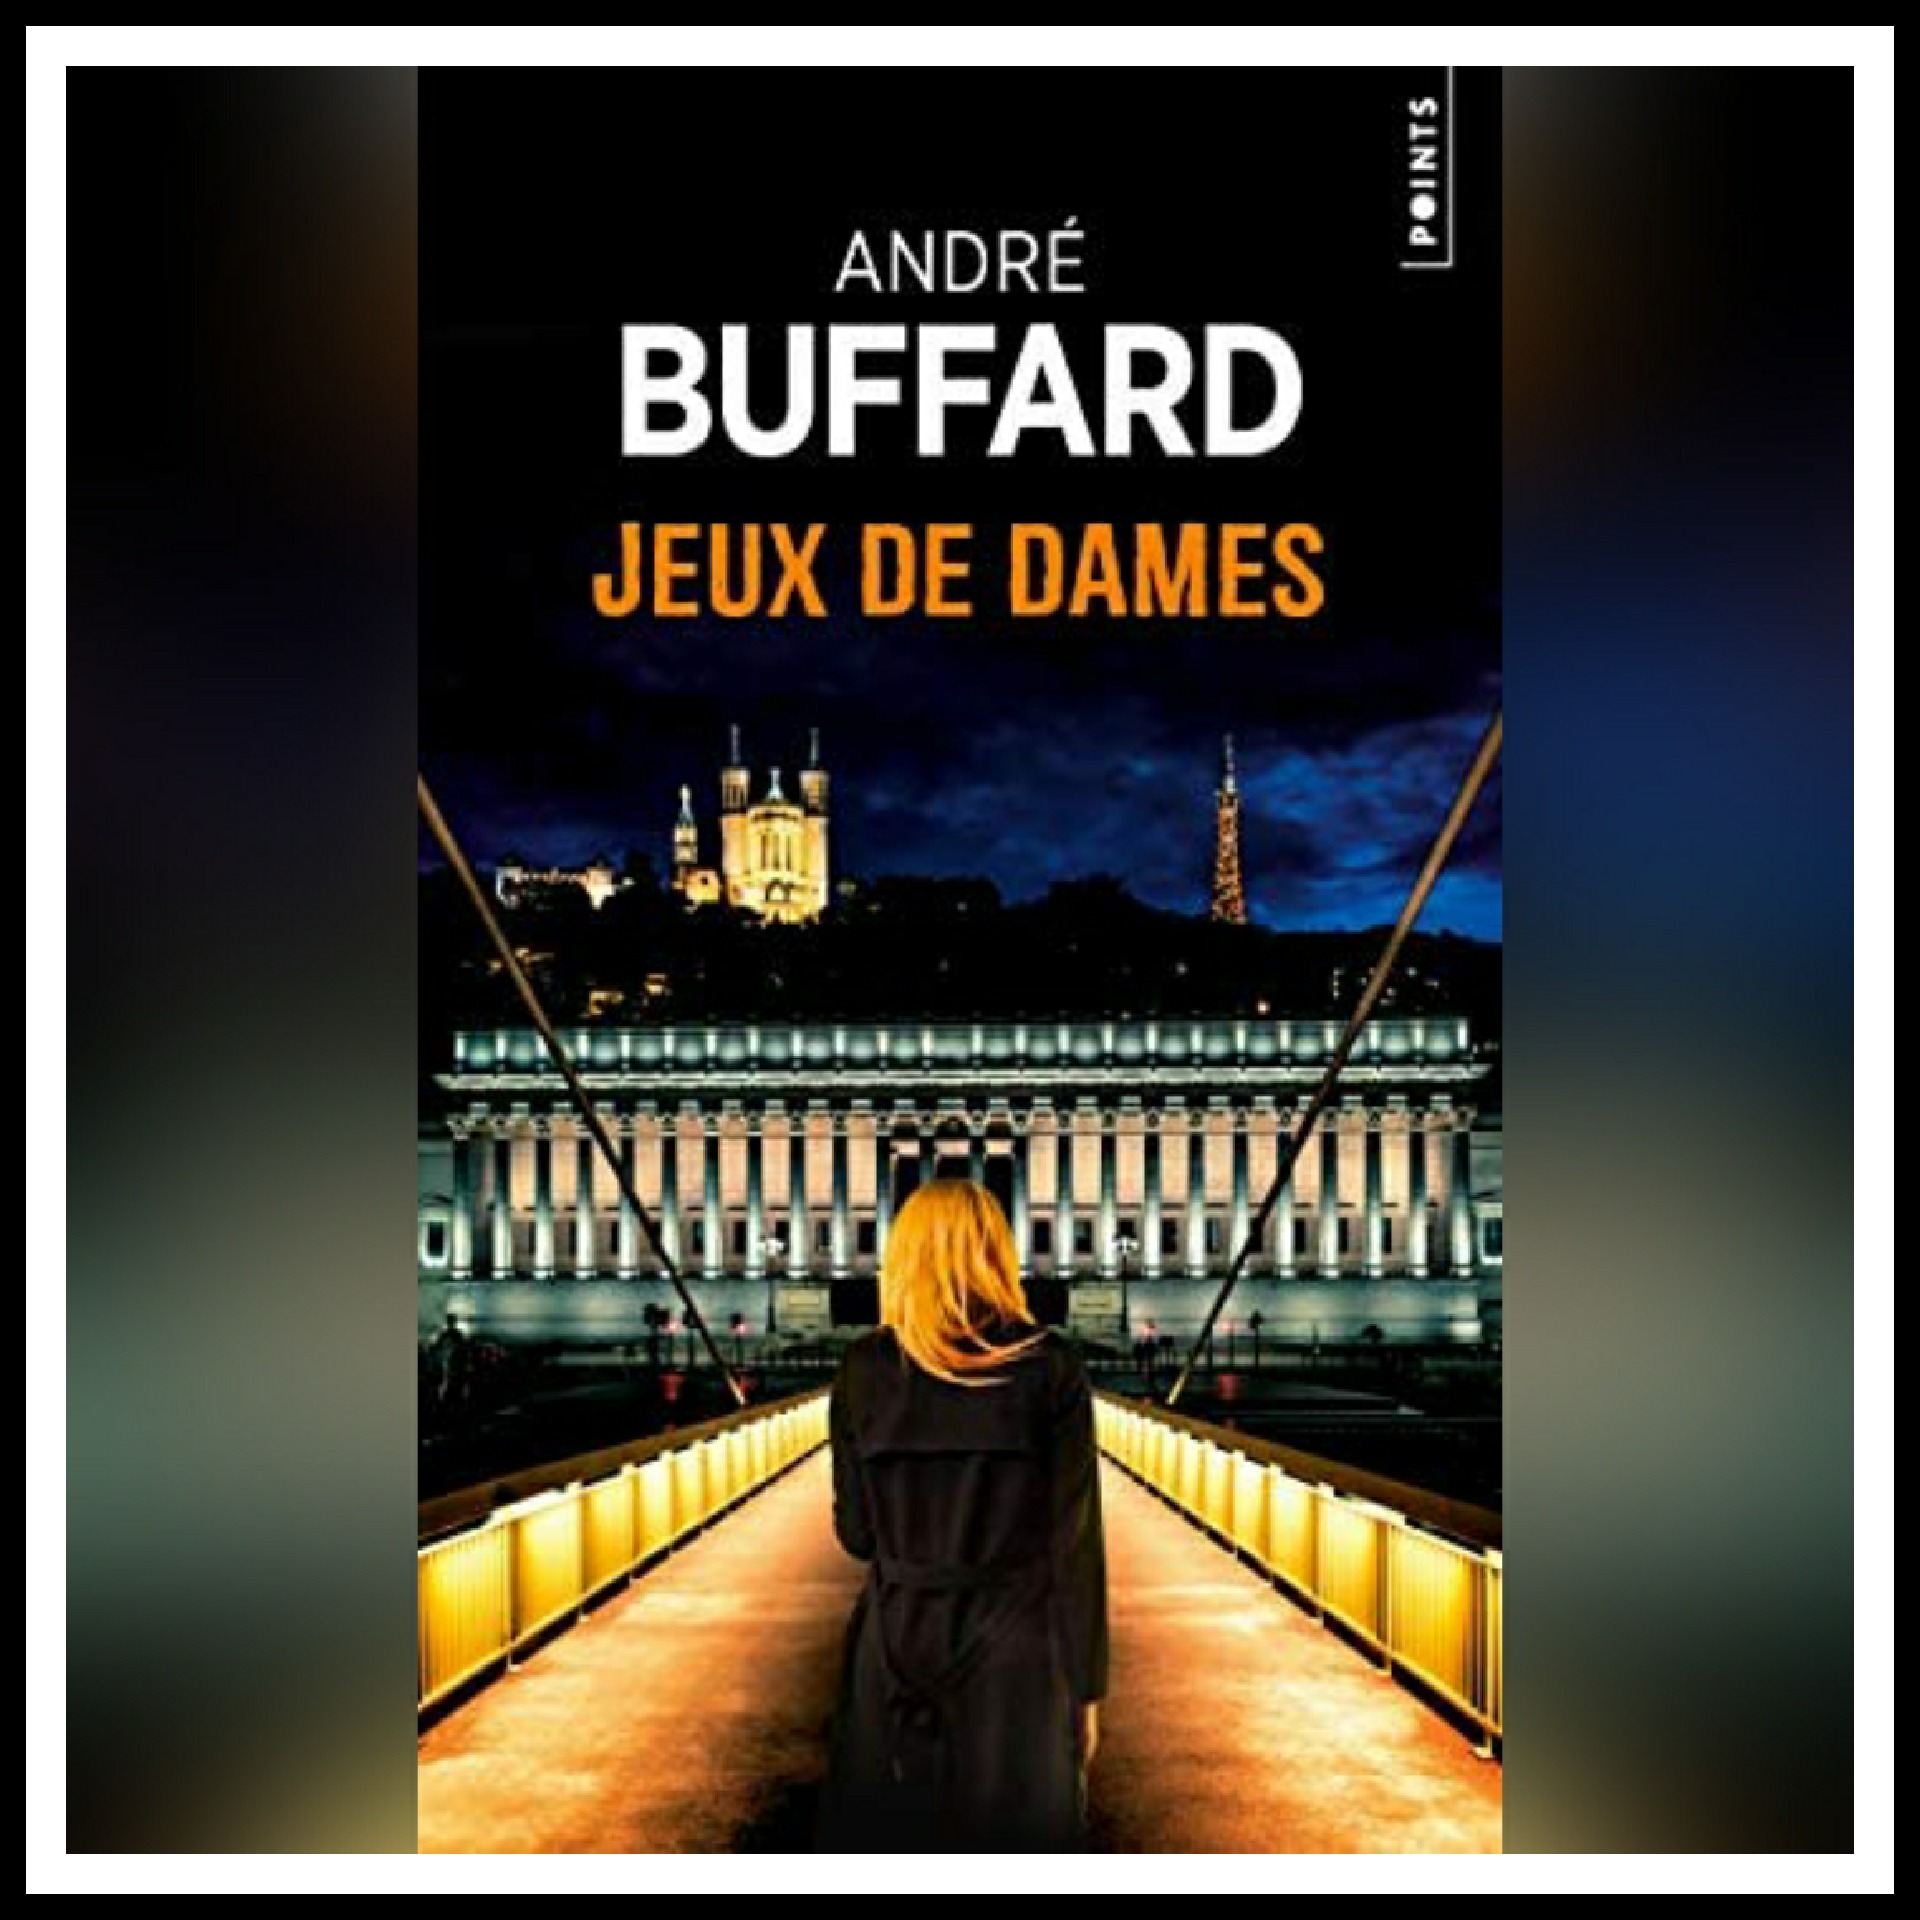 Lire la suite à propos de l’article Chroniques 2020 \ Jeux de Dames d’André Buffard